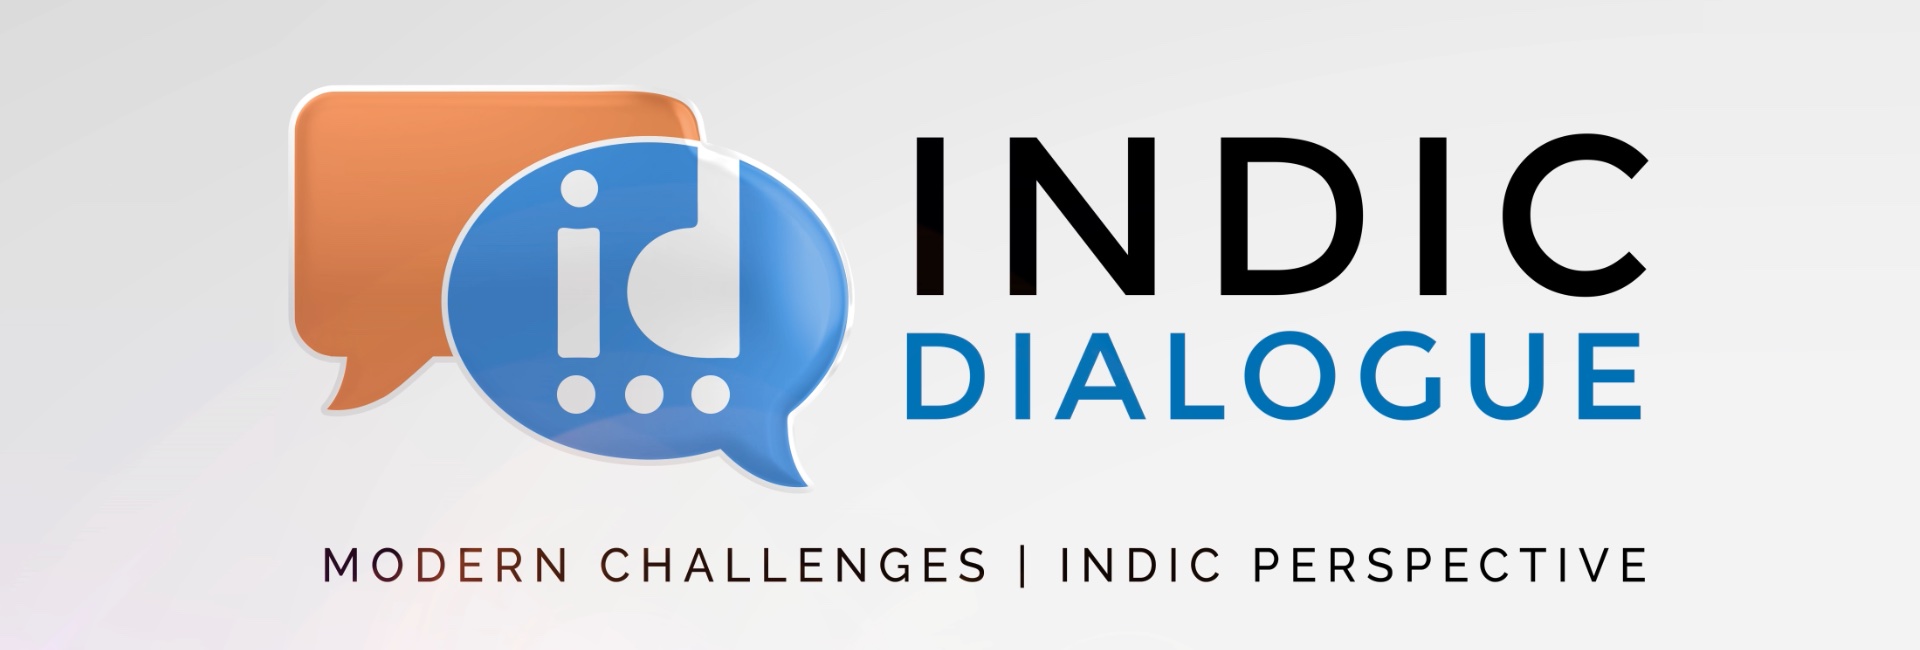 Indic Dialogue